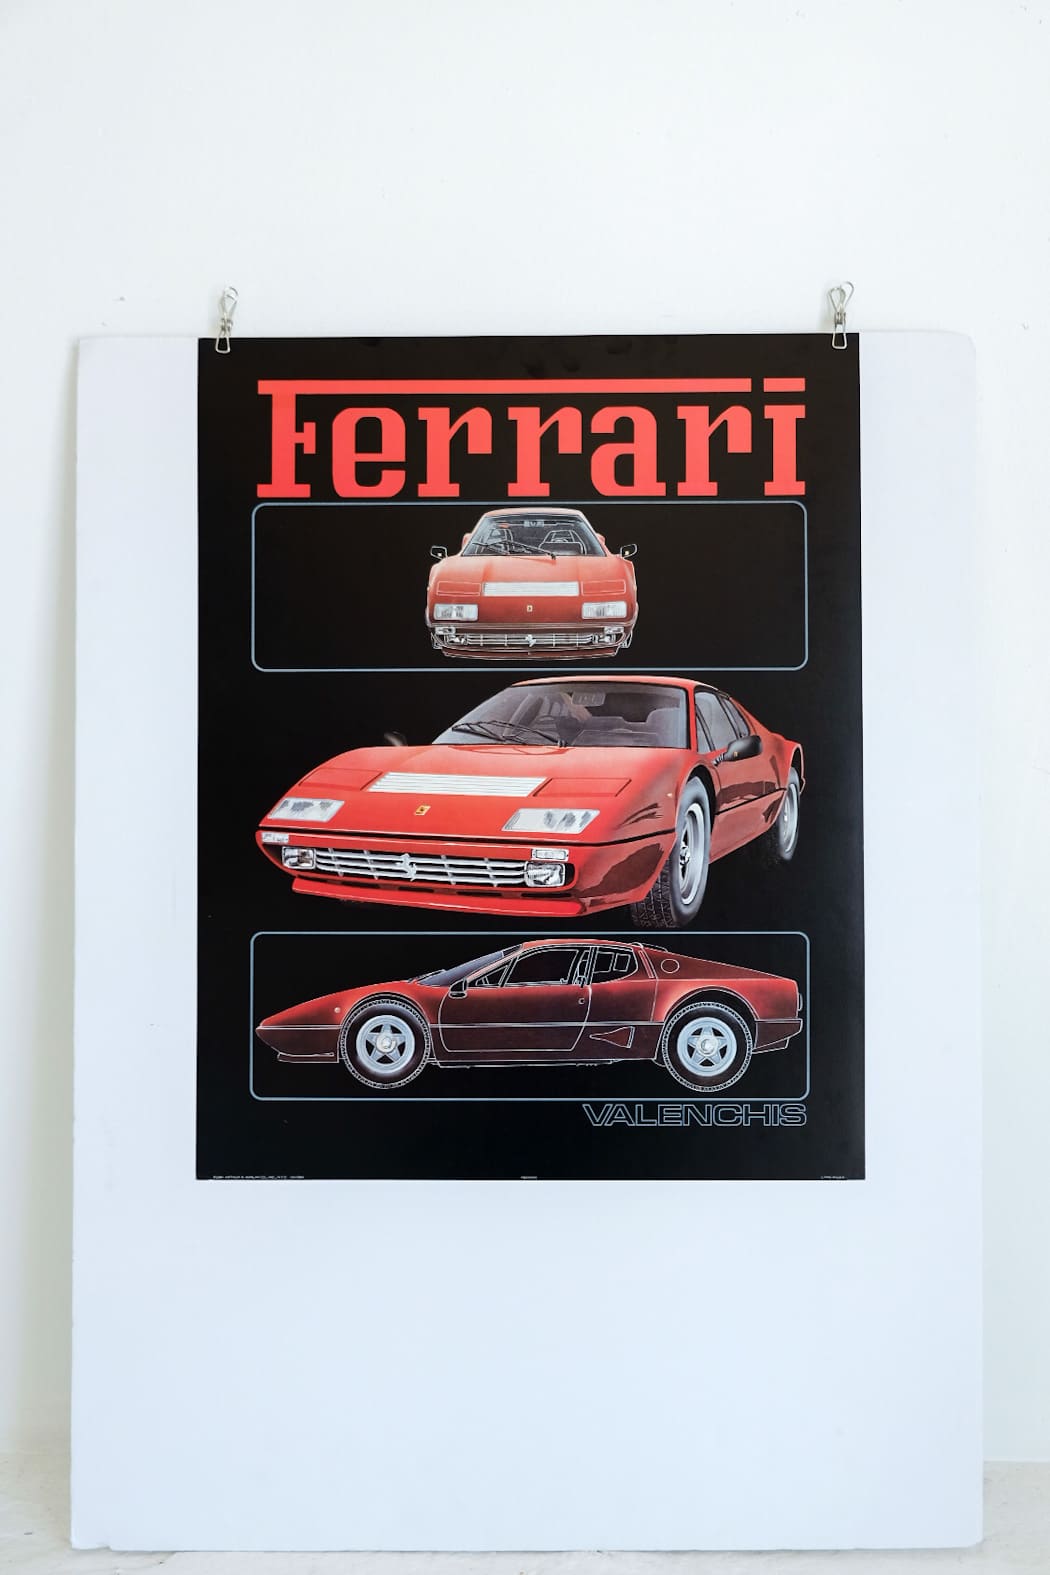 80's Ferrari Valenchis